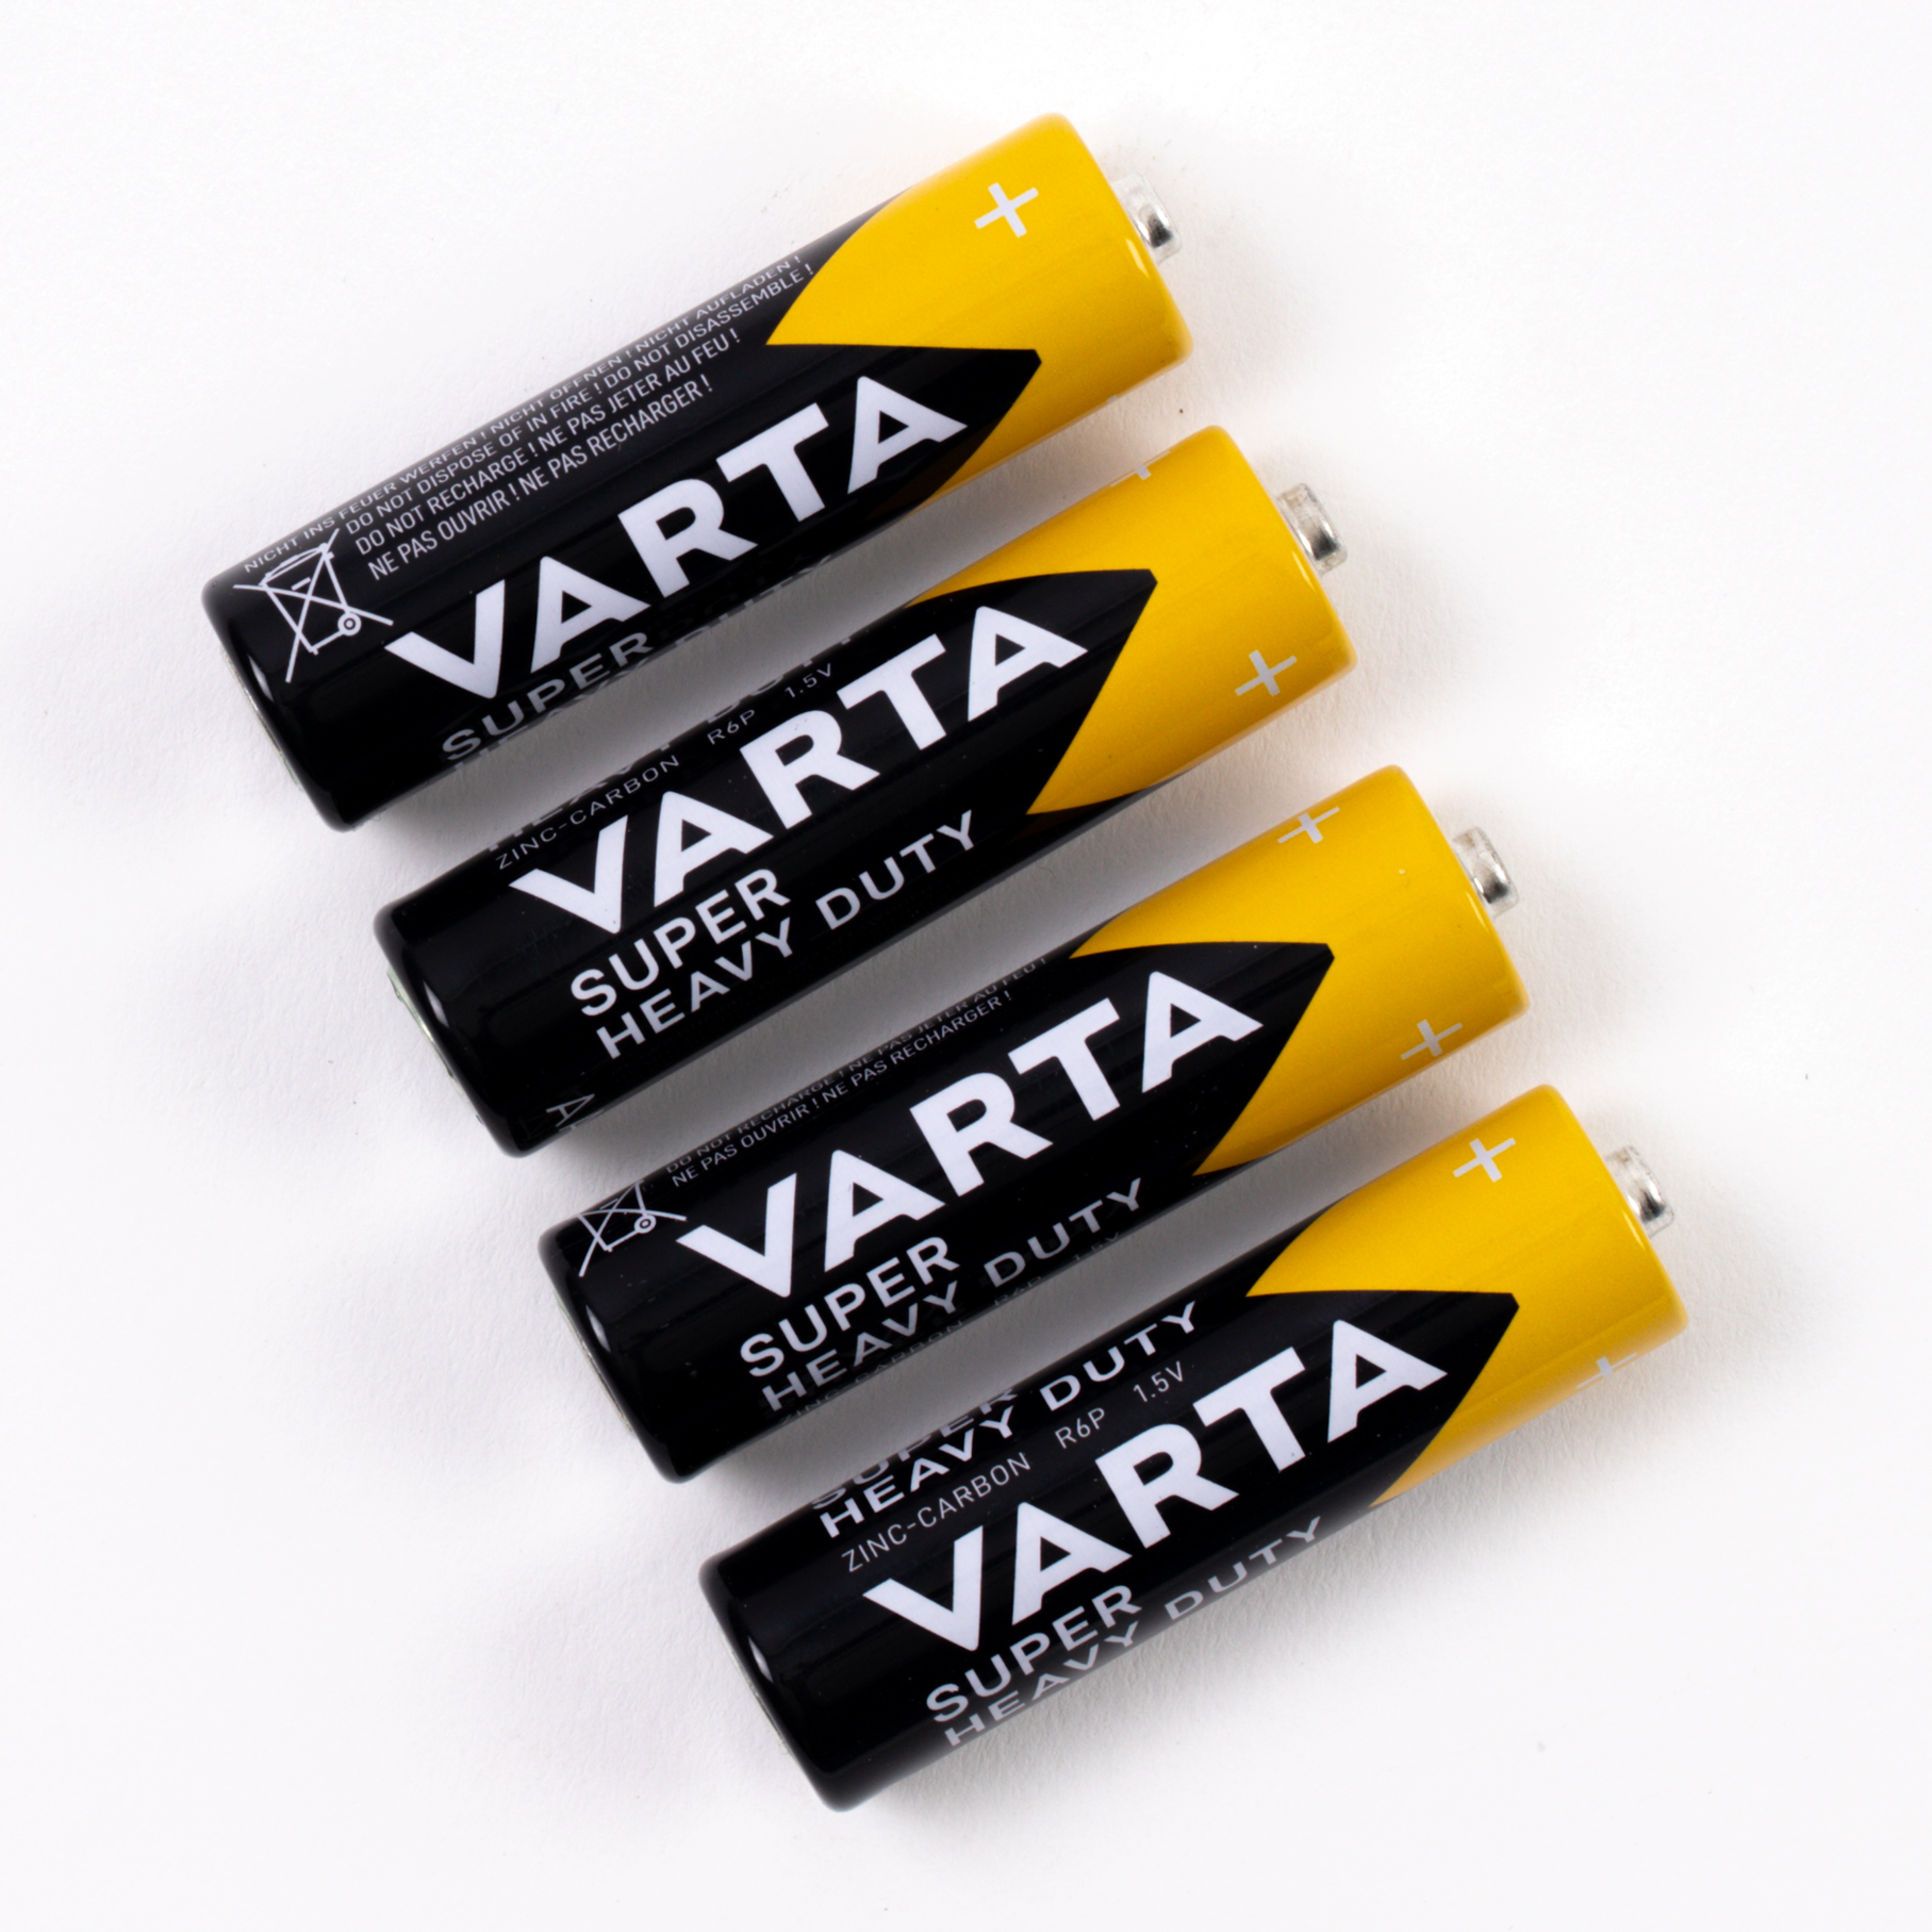 Varta Superlife AAA Single-use battery Alkaline R03 AAA 